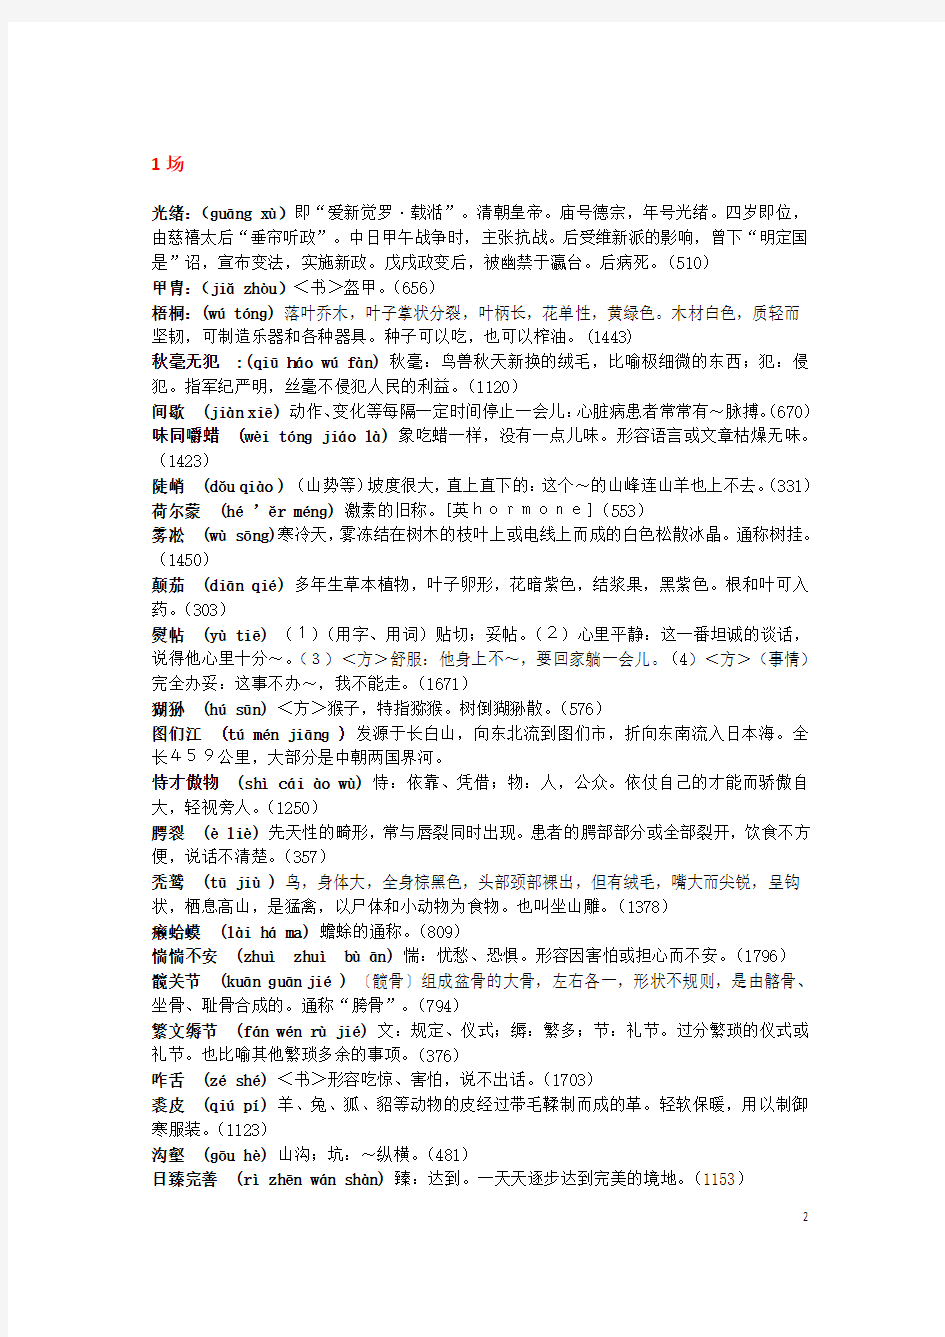 中国汉字听写大会全部词语+拼音+解释(1-13期)